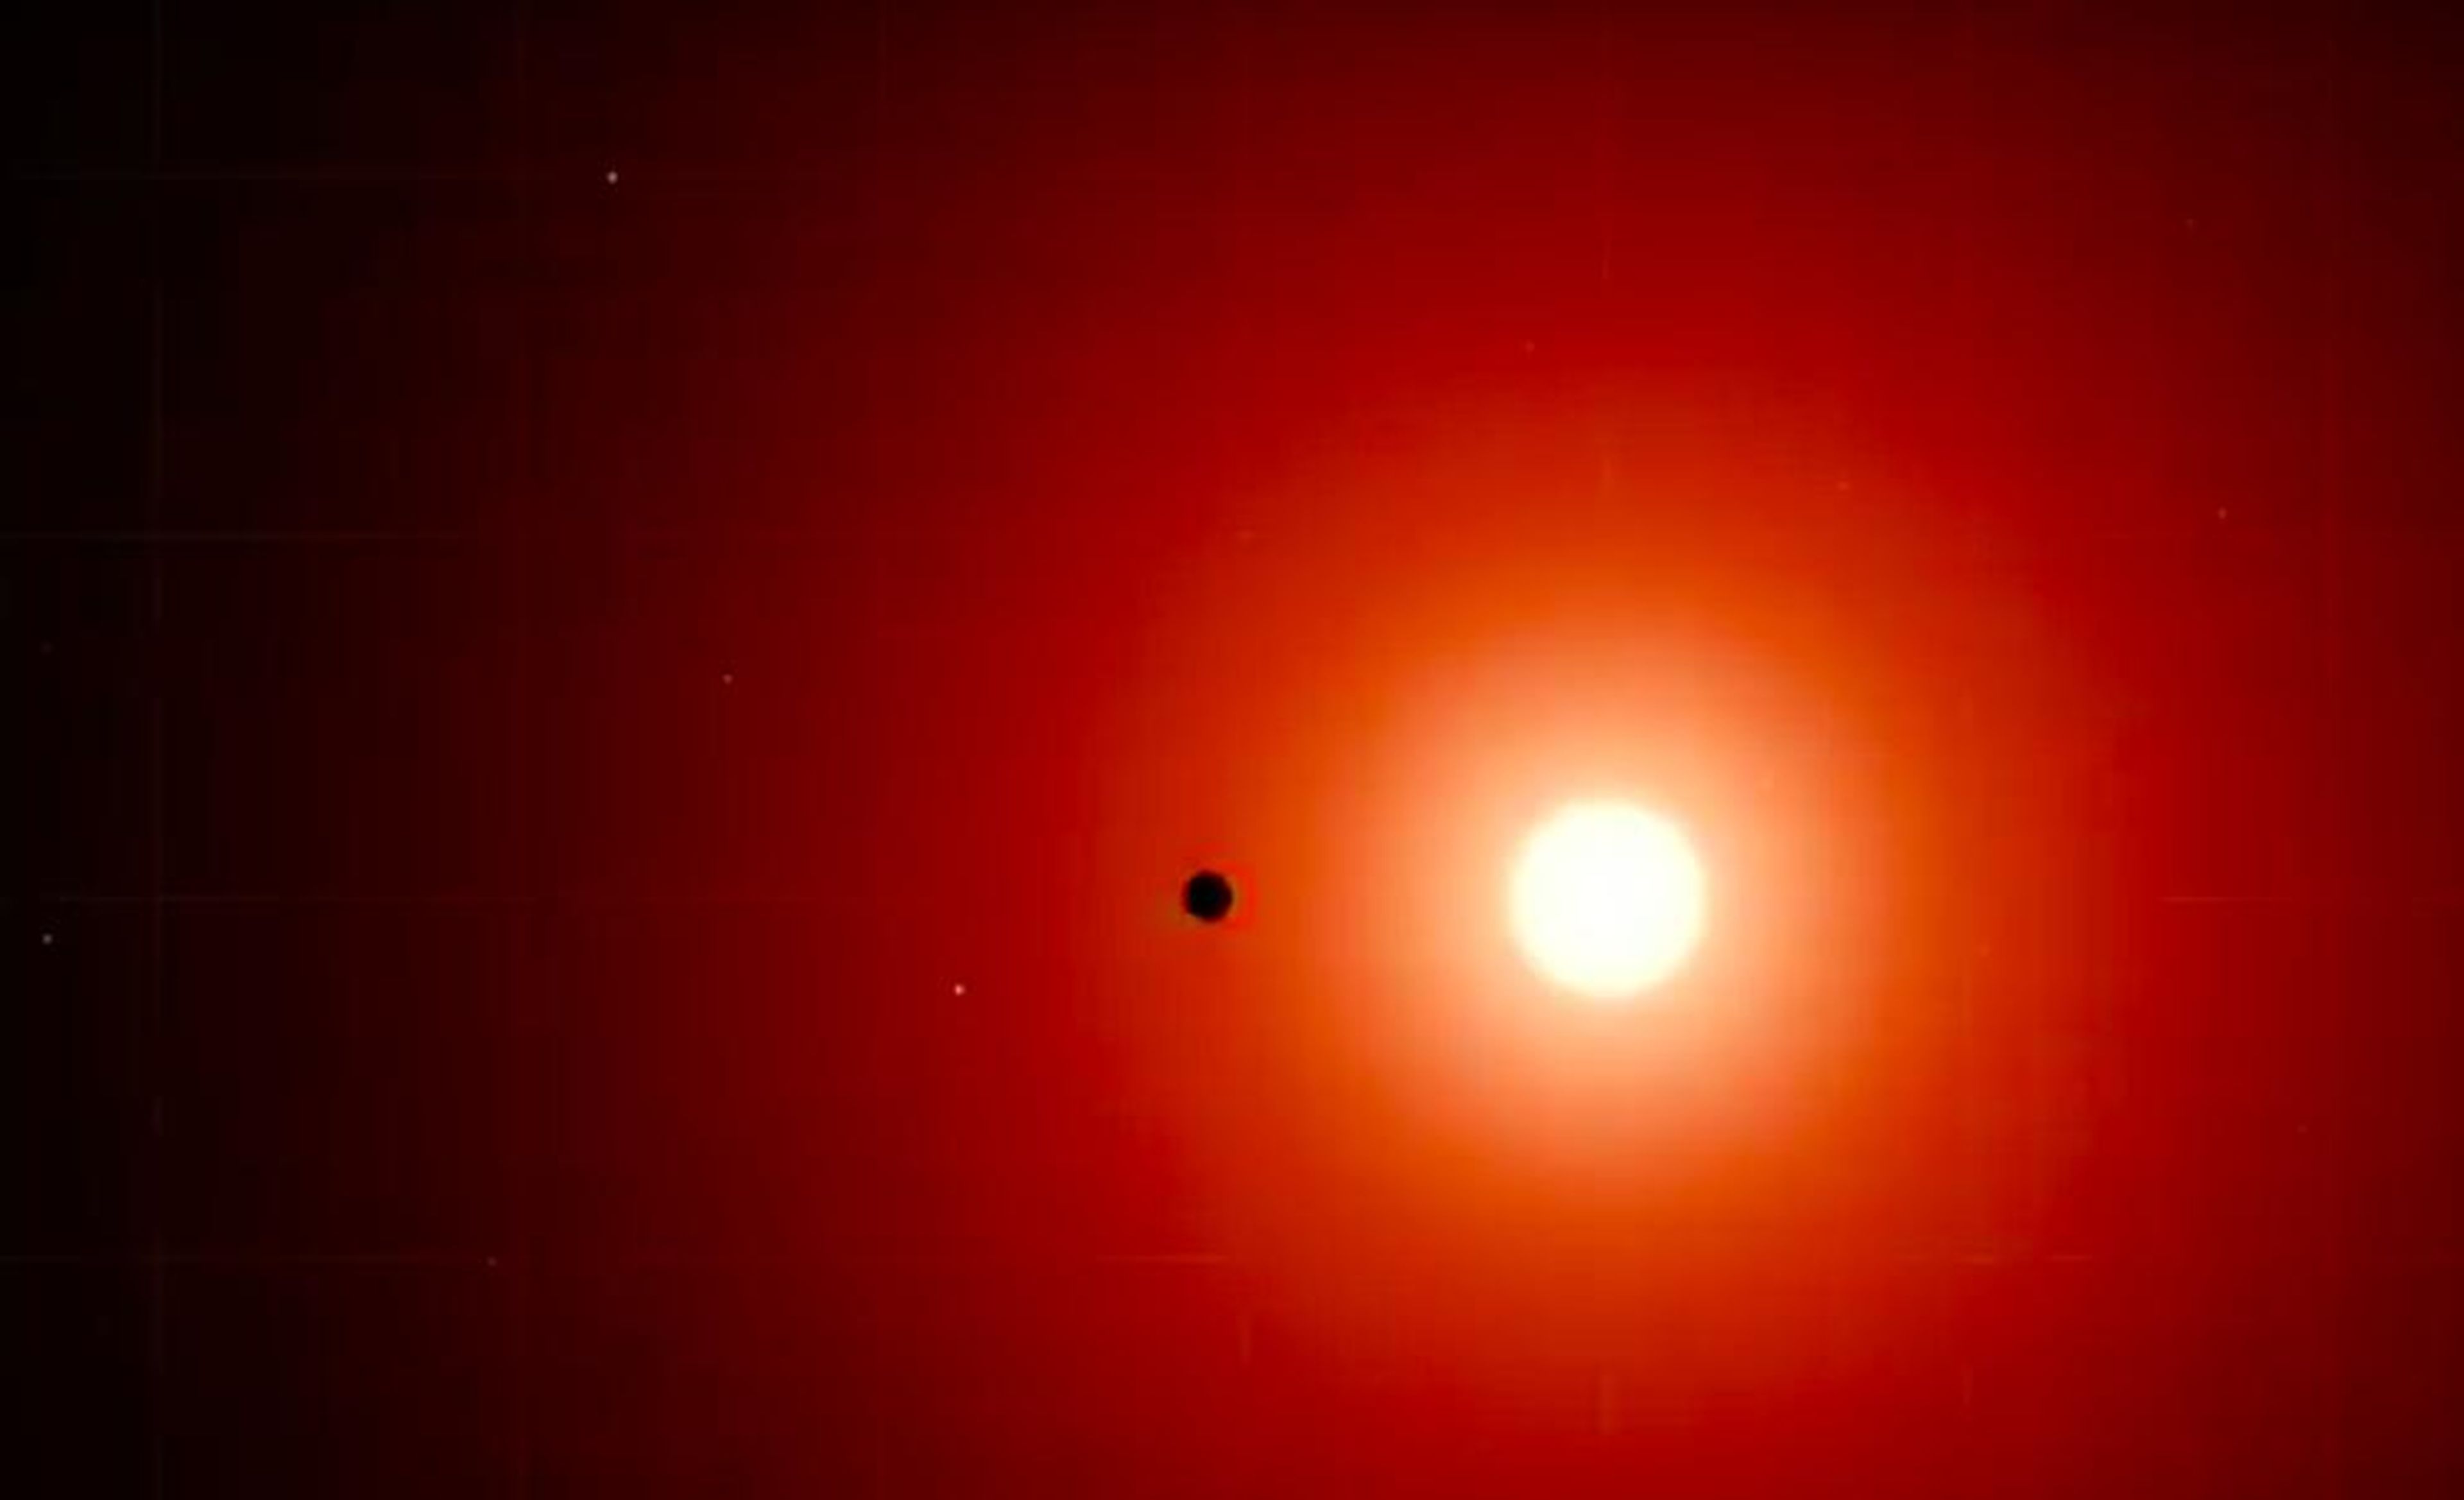 Fotografía de la estrella enana roja TOI 700 con uno de sus planetas pasado por delante.